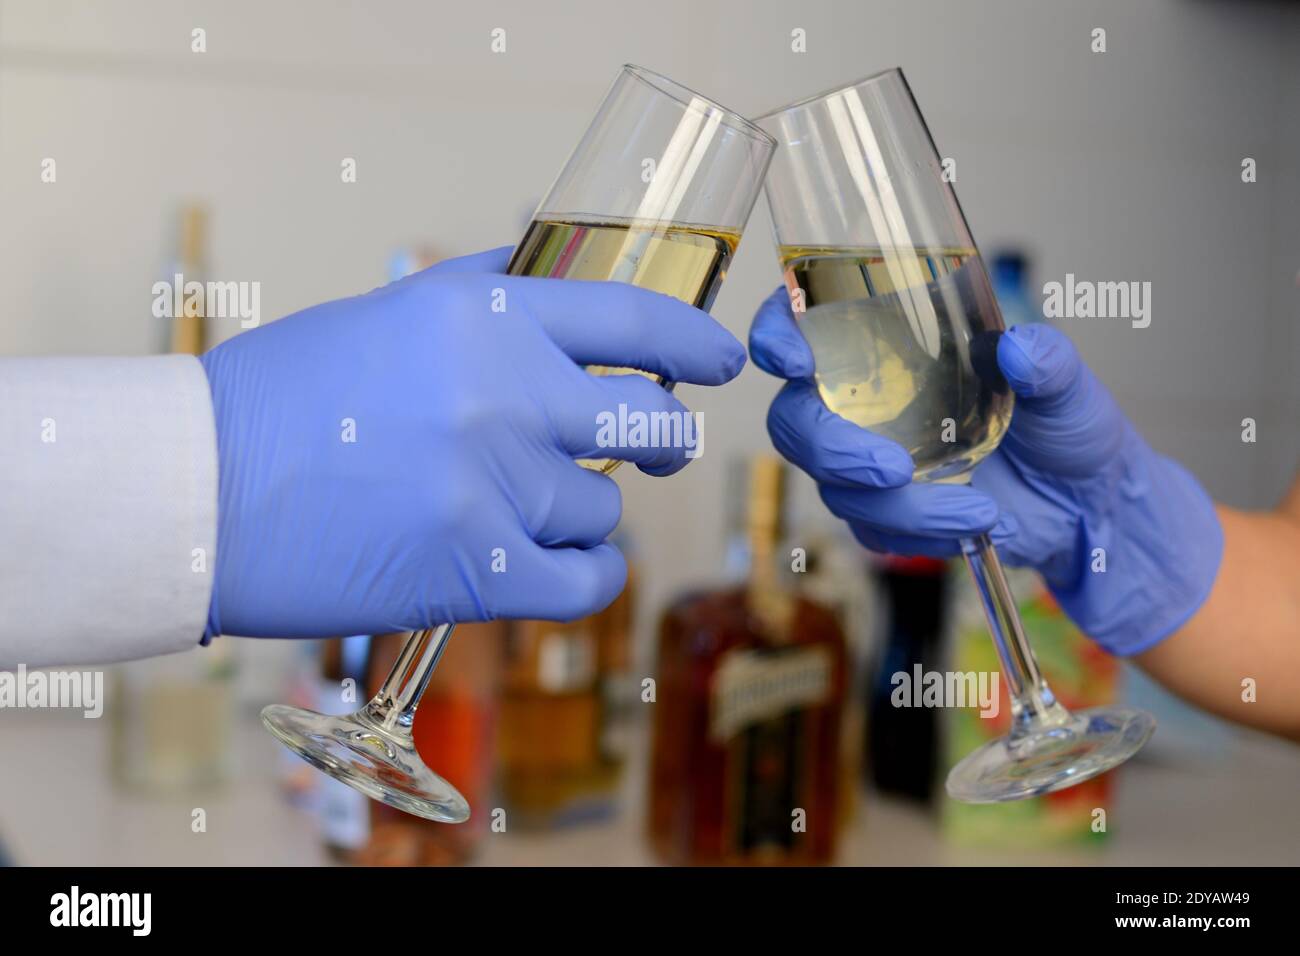 Fête du nouvel an pendant la pandémie Covid-19. Une coupe de champagne étant tenue entre les mains avec un gant bleu jetable. Banque D'Images